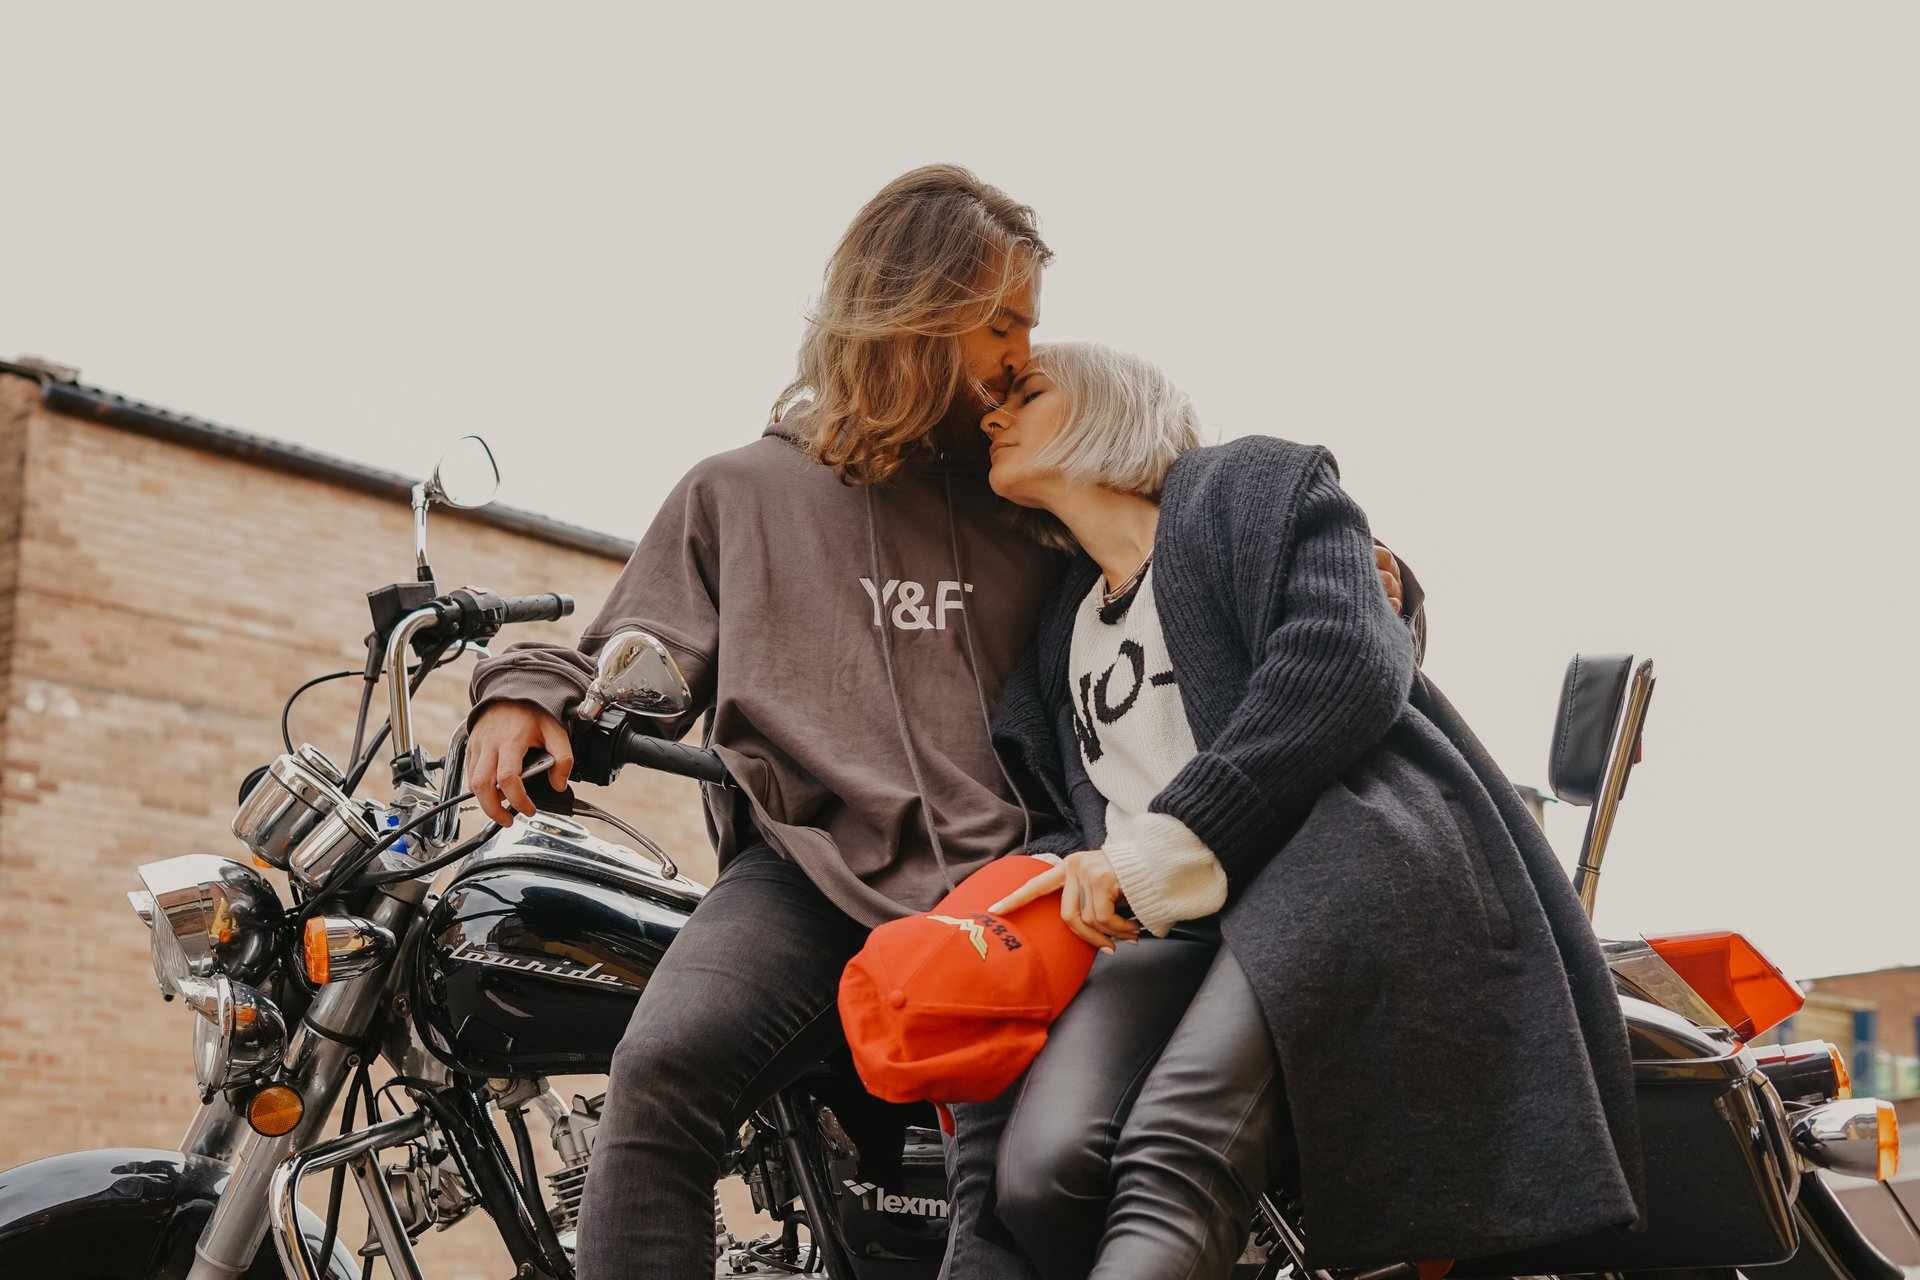 Motorrad - Sie sucht Ihn (Frau sucht Mann): Partneranzeigen Singles Partnersuche